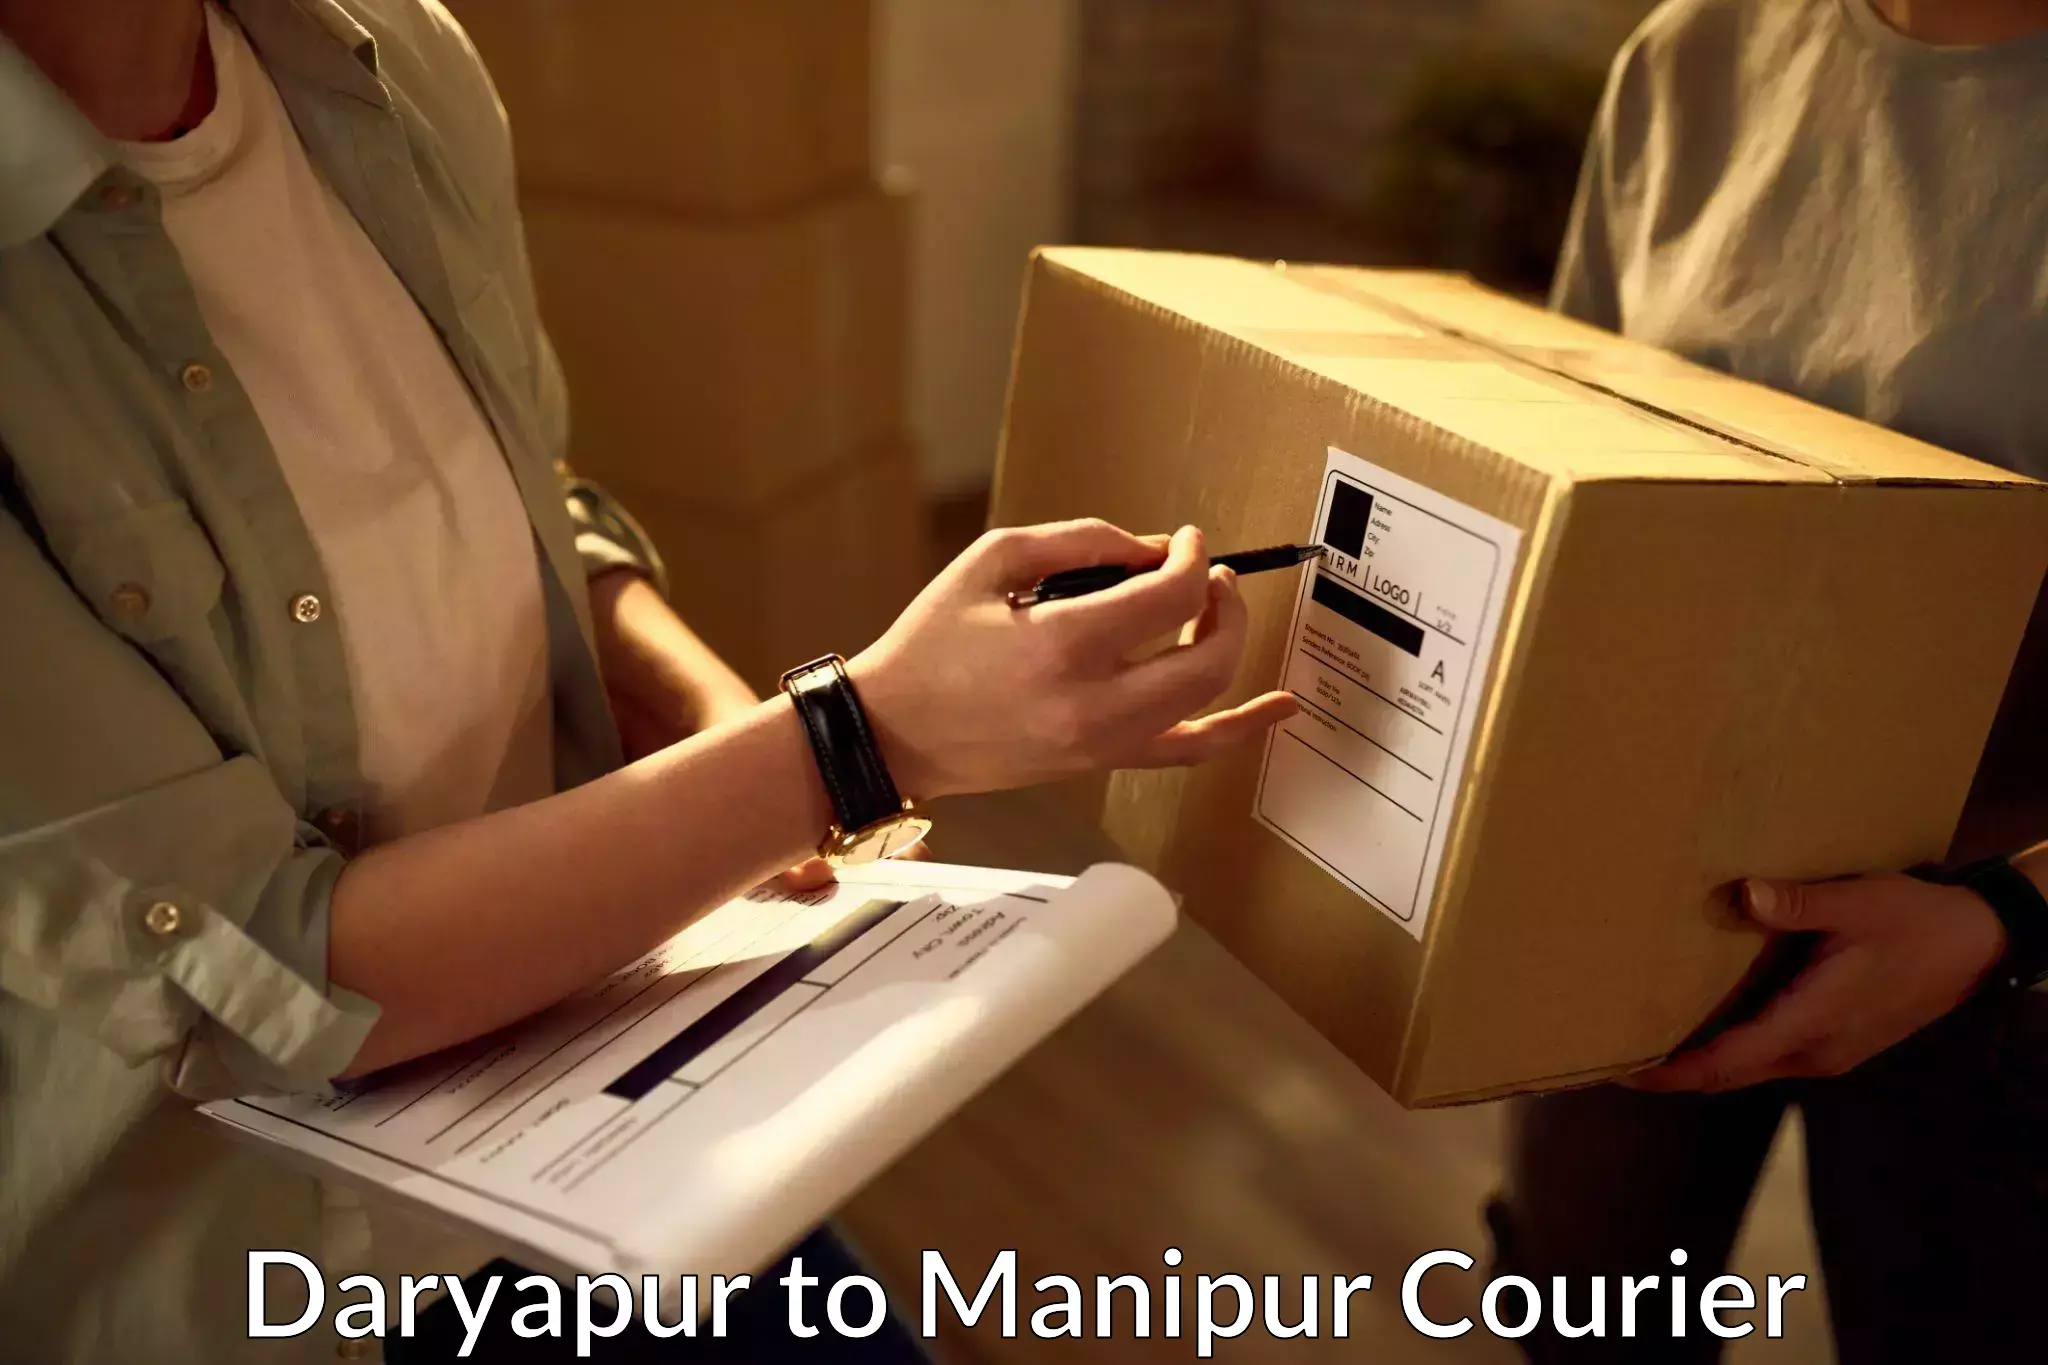 Urban courier service Daryapur to Senapati